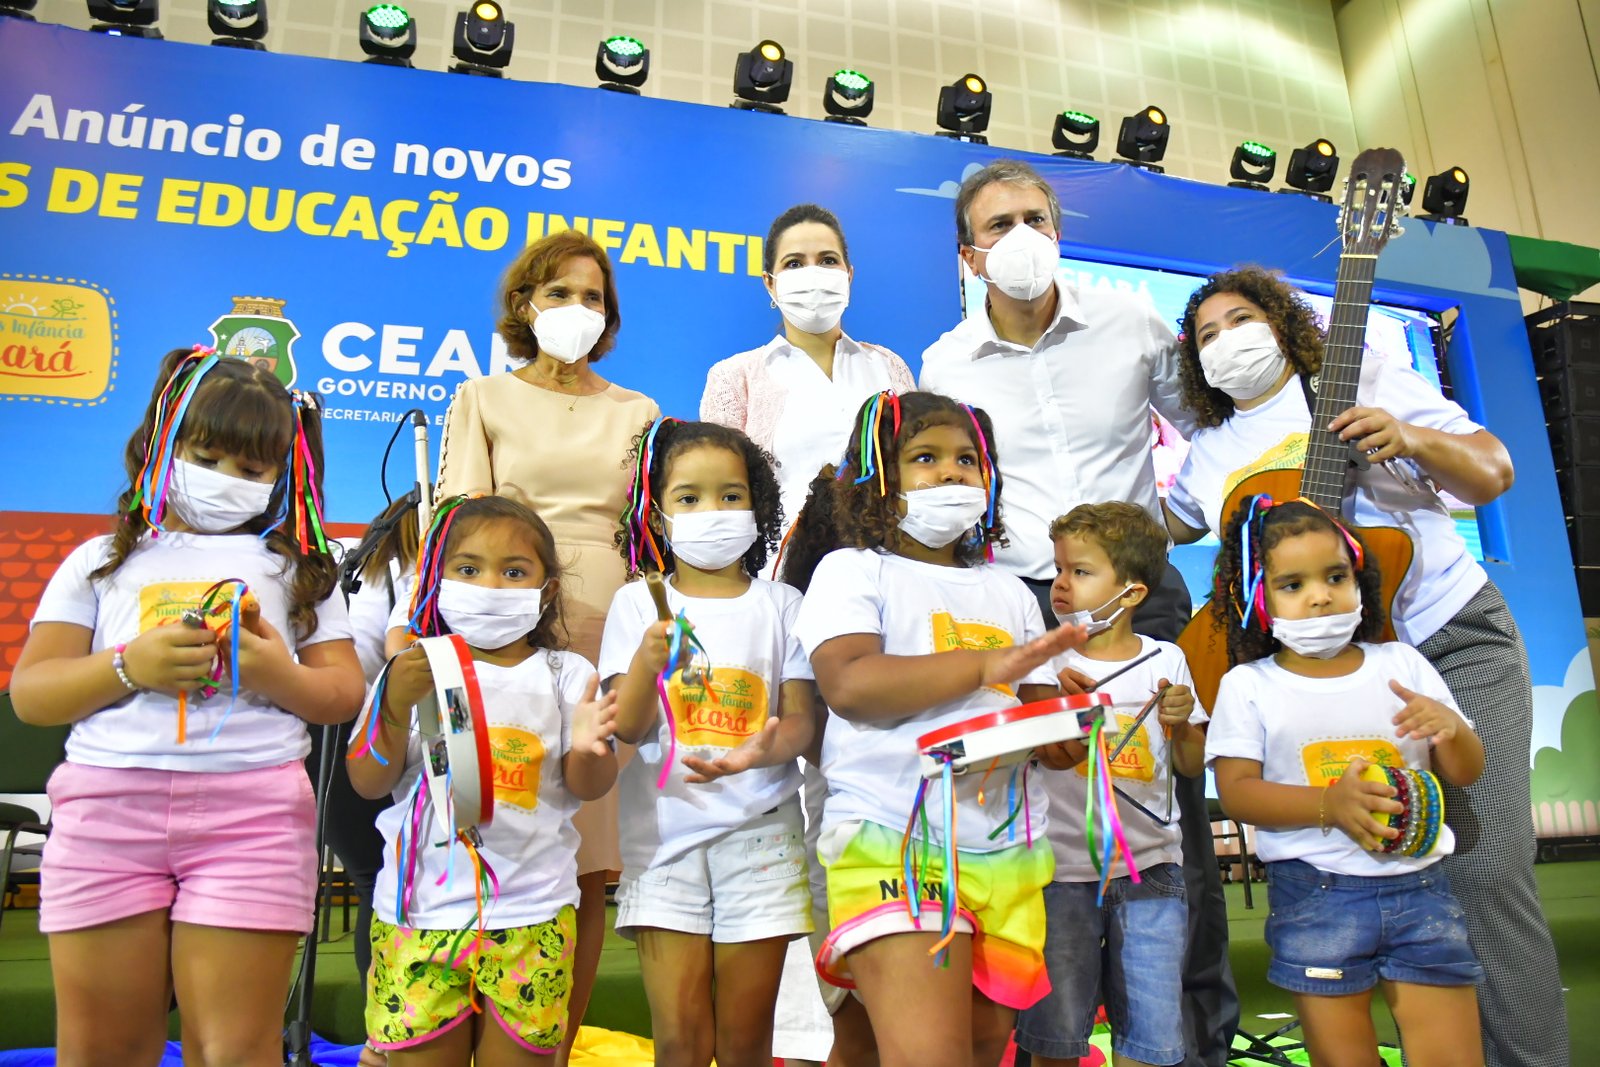 Educação: Com mais 80 CEIs, Governo do Ceará vai universalizar atendimento à educação infantil